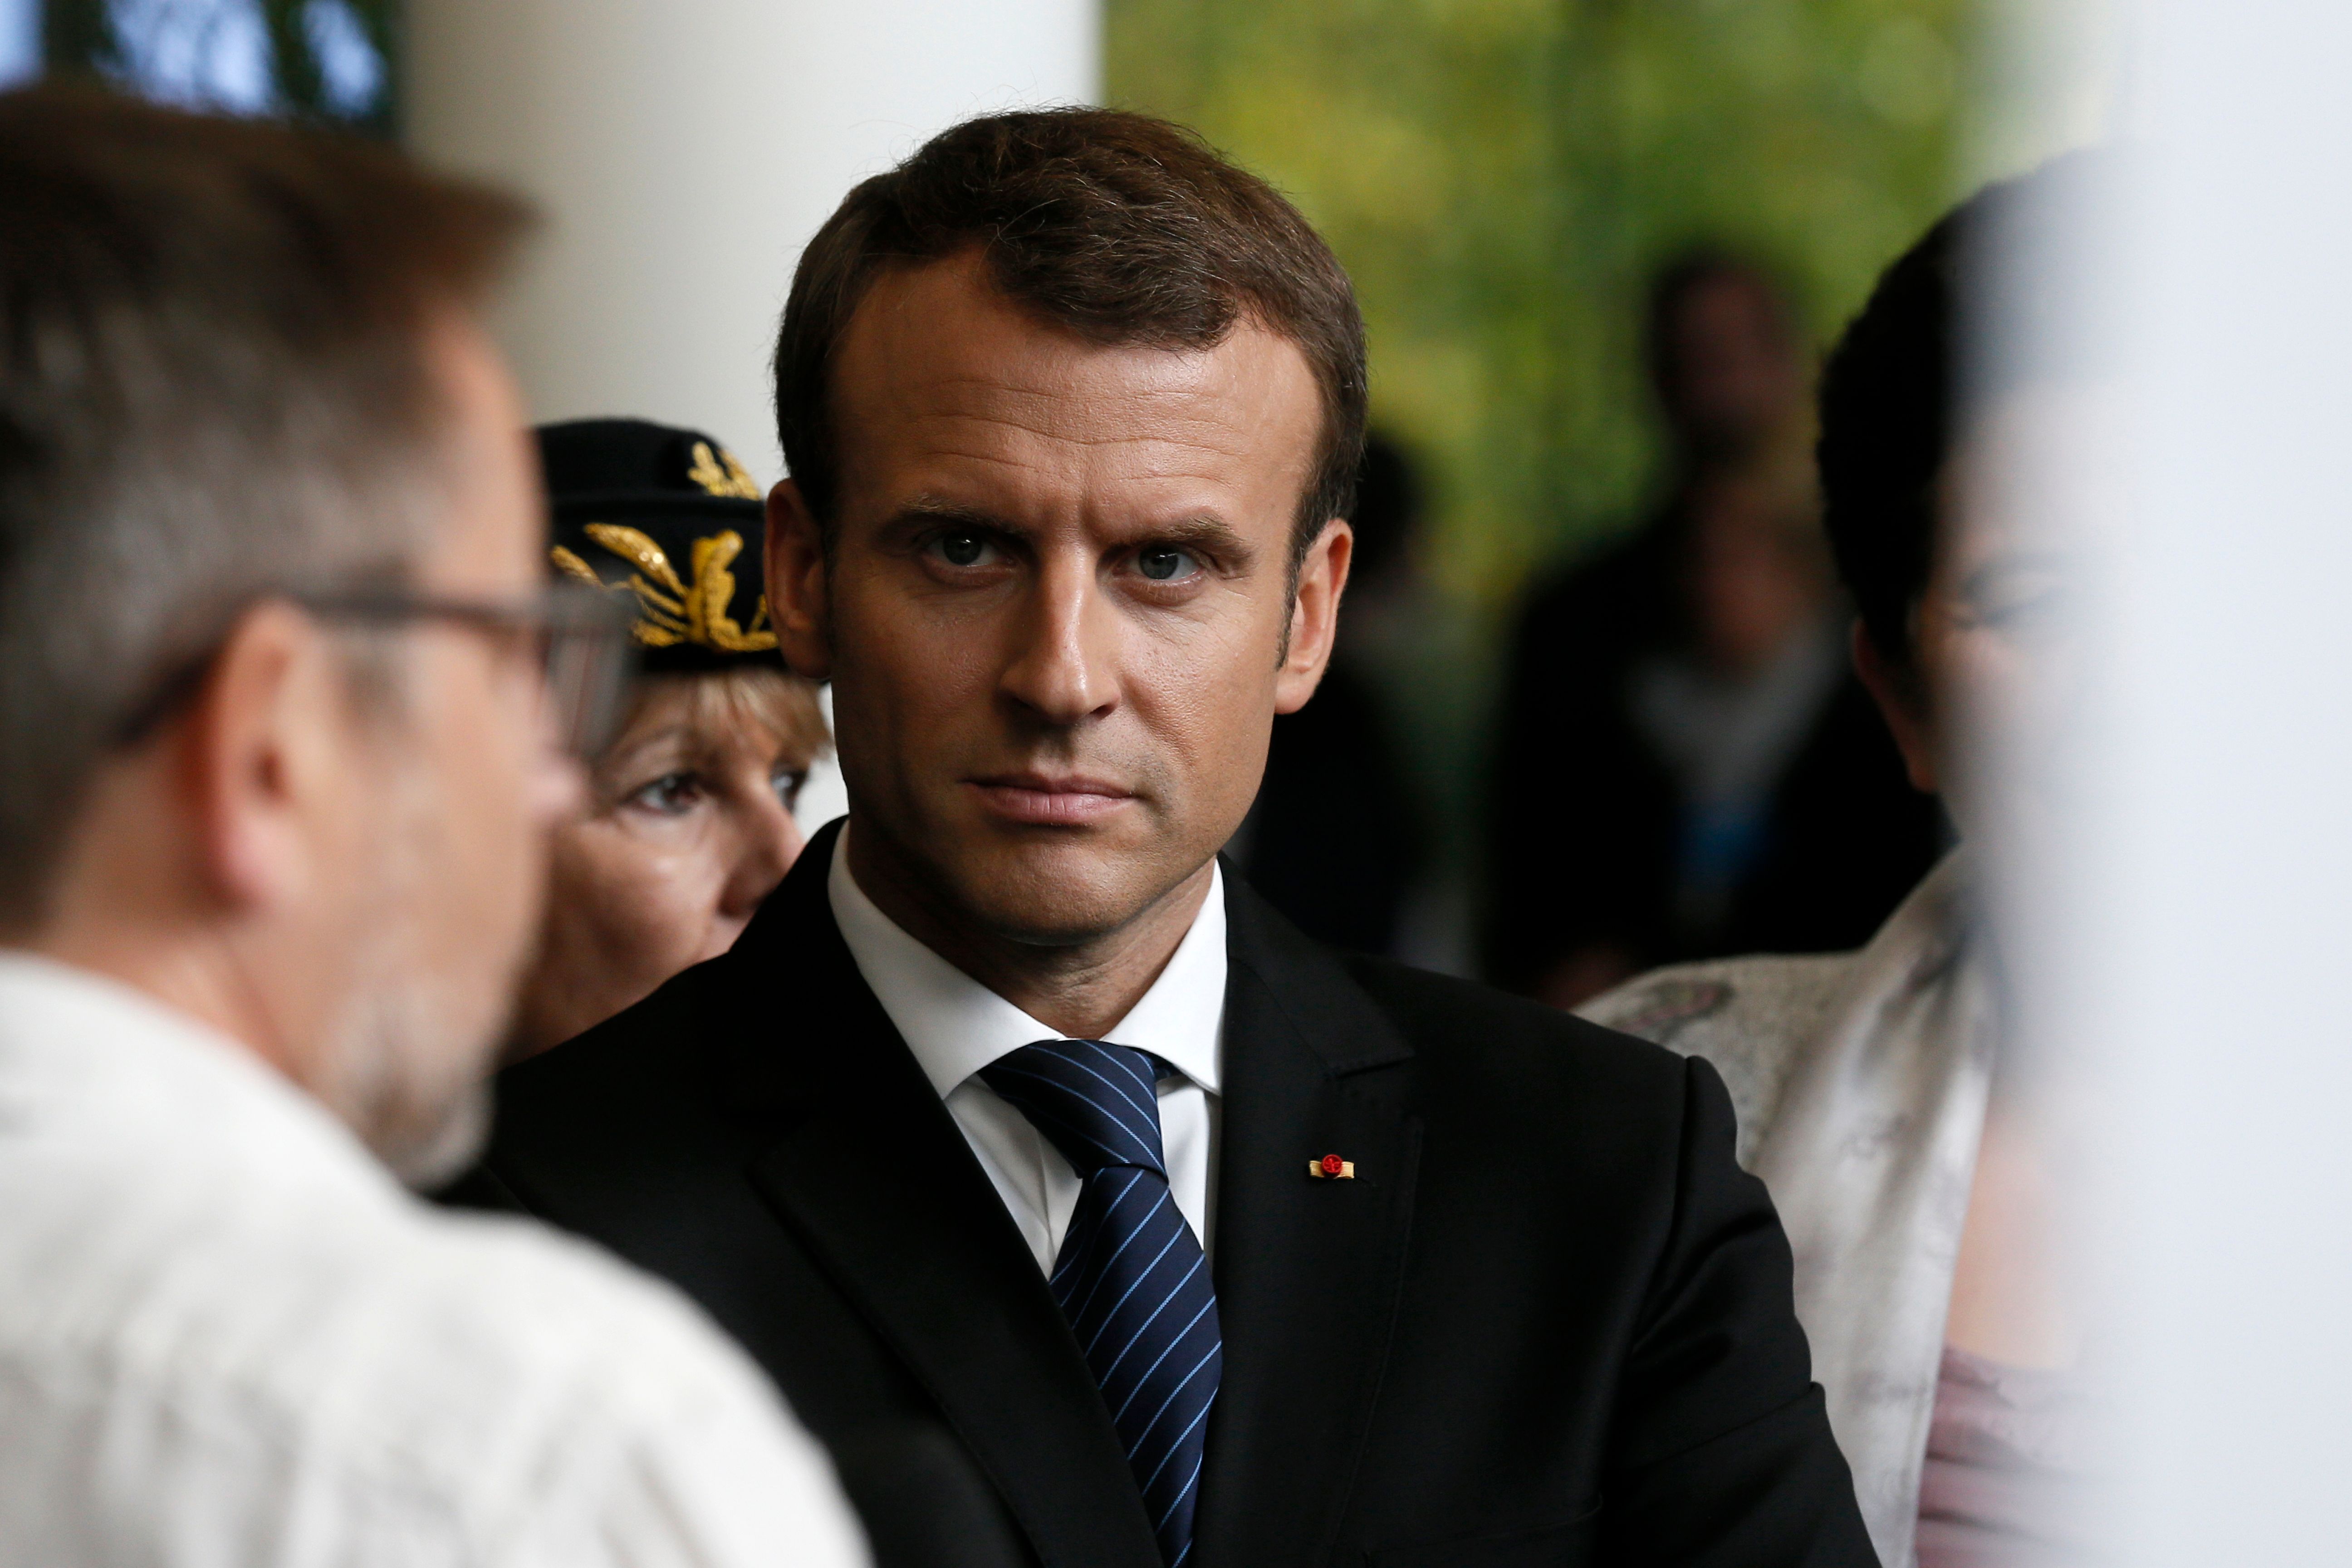 法语新闻:财团对马克龙的信心有所降低